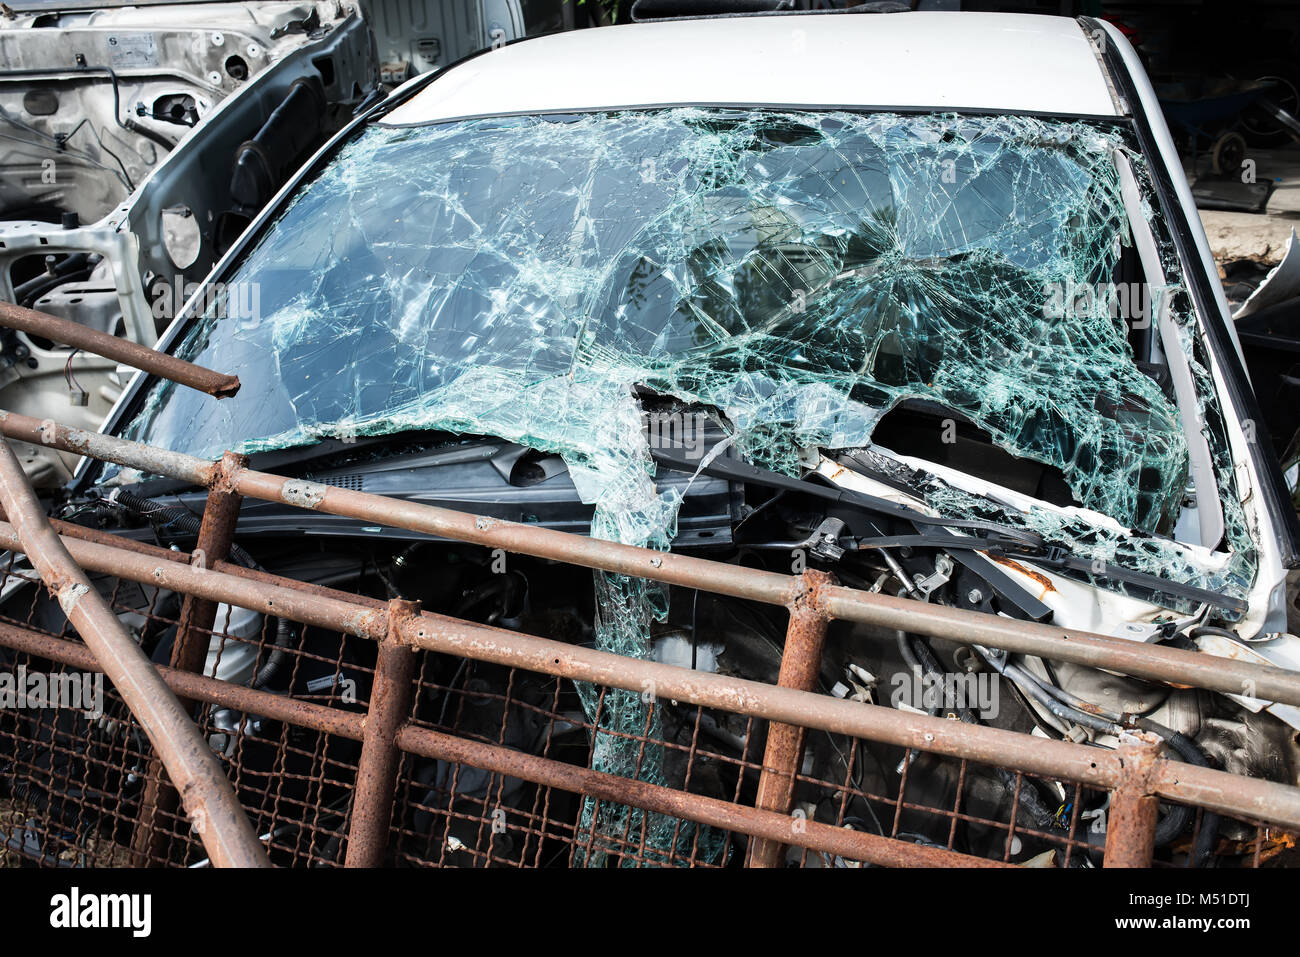 Die crash Unfall Auto whit gebrochene Frontscheibe Spiegel an den Papierkorb garage Foto mit niedriger Beleuchtung im Freien. Stockfoto